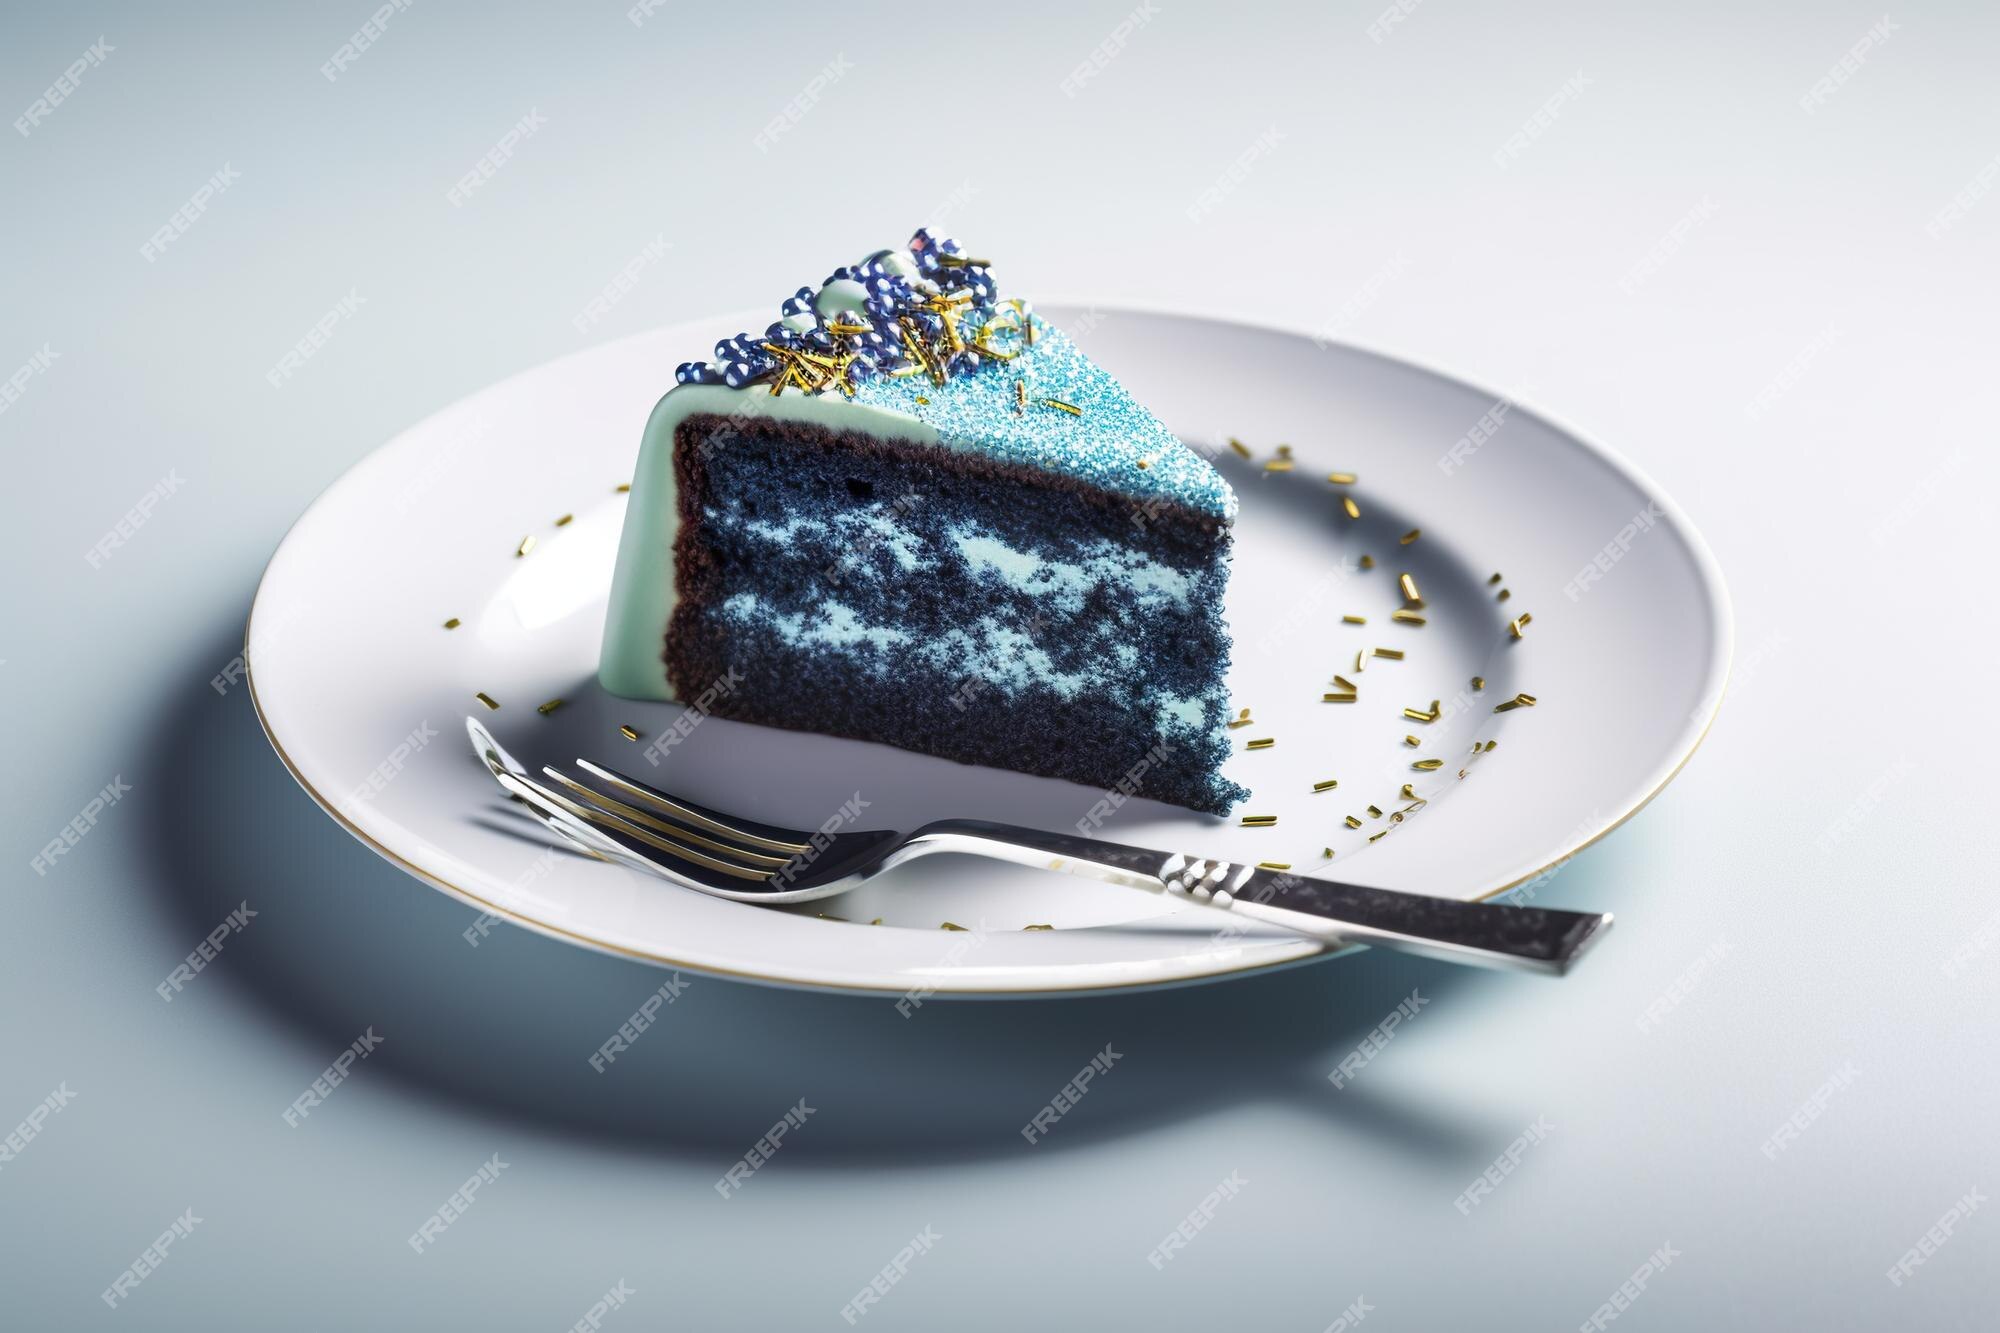 Detalhes Decorativos De Um Bolo De Aniversário Feito Para Garotinha Em Azul  E Branco Imagem de Stock - Imagem de padaria, delicioso: 239592891